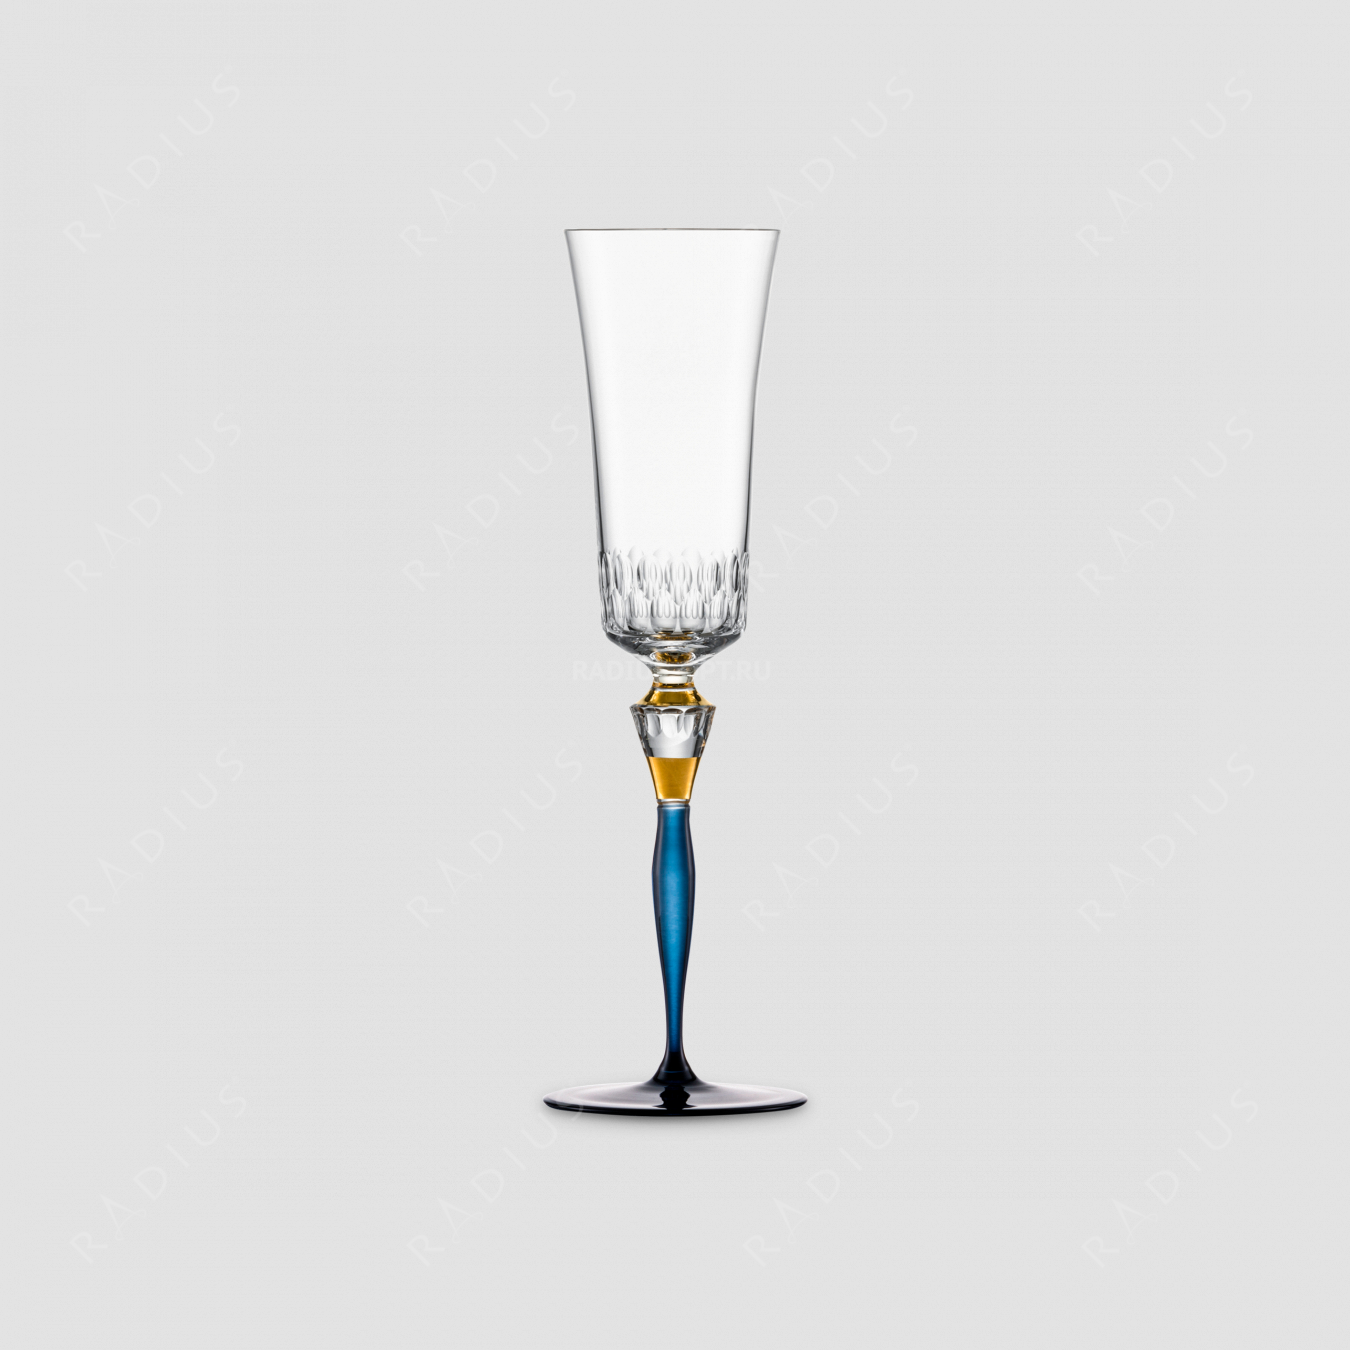 Бокал для шампанского, объем 250 мл, материал - бессвинцовый хрусталь, синий с золотом, серия Champagner Exklusiv, EISCH, Германия